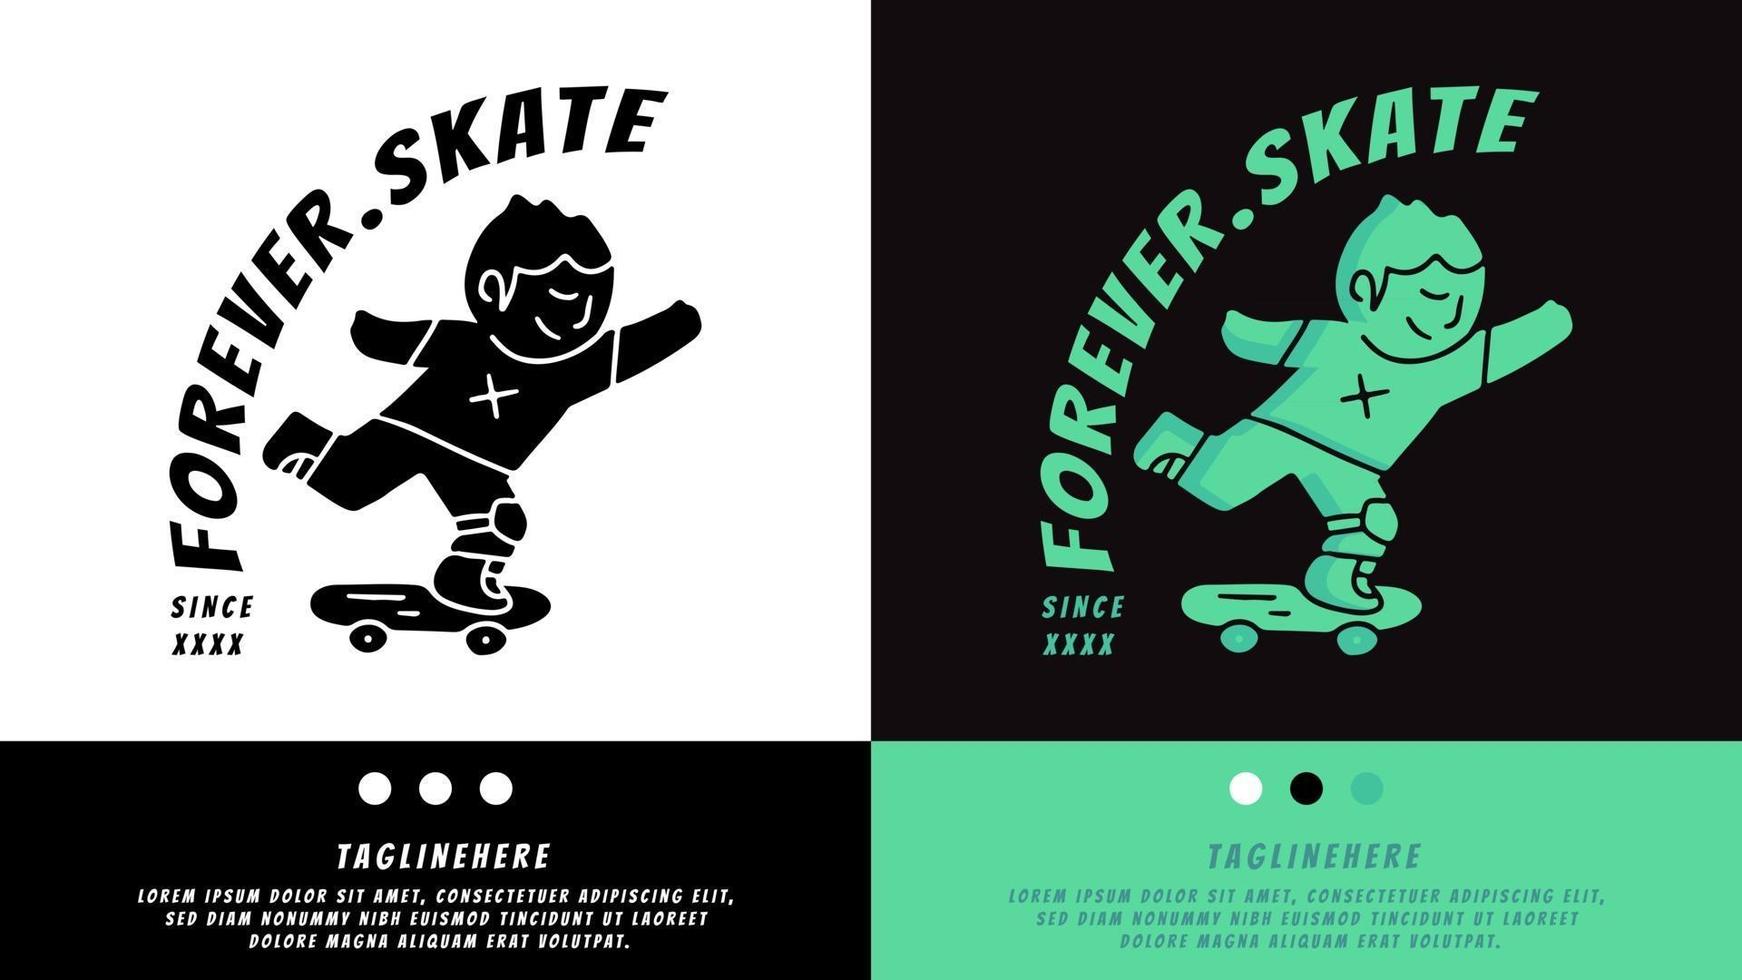 niño jugando patineta en estilo retro. ilustración para camisetas, carteles, logotipos, adhesivos o prendas de vestir. vector